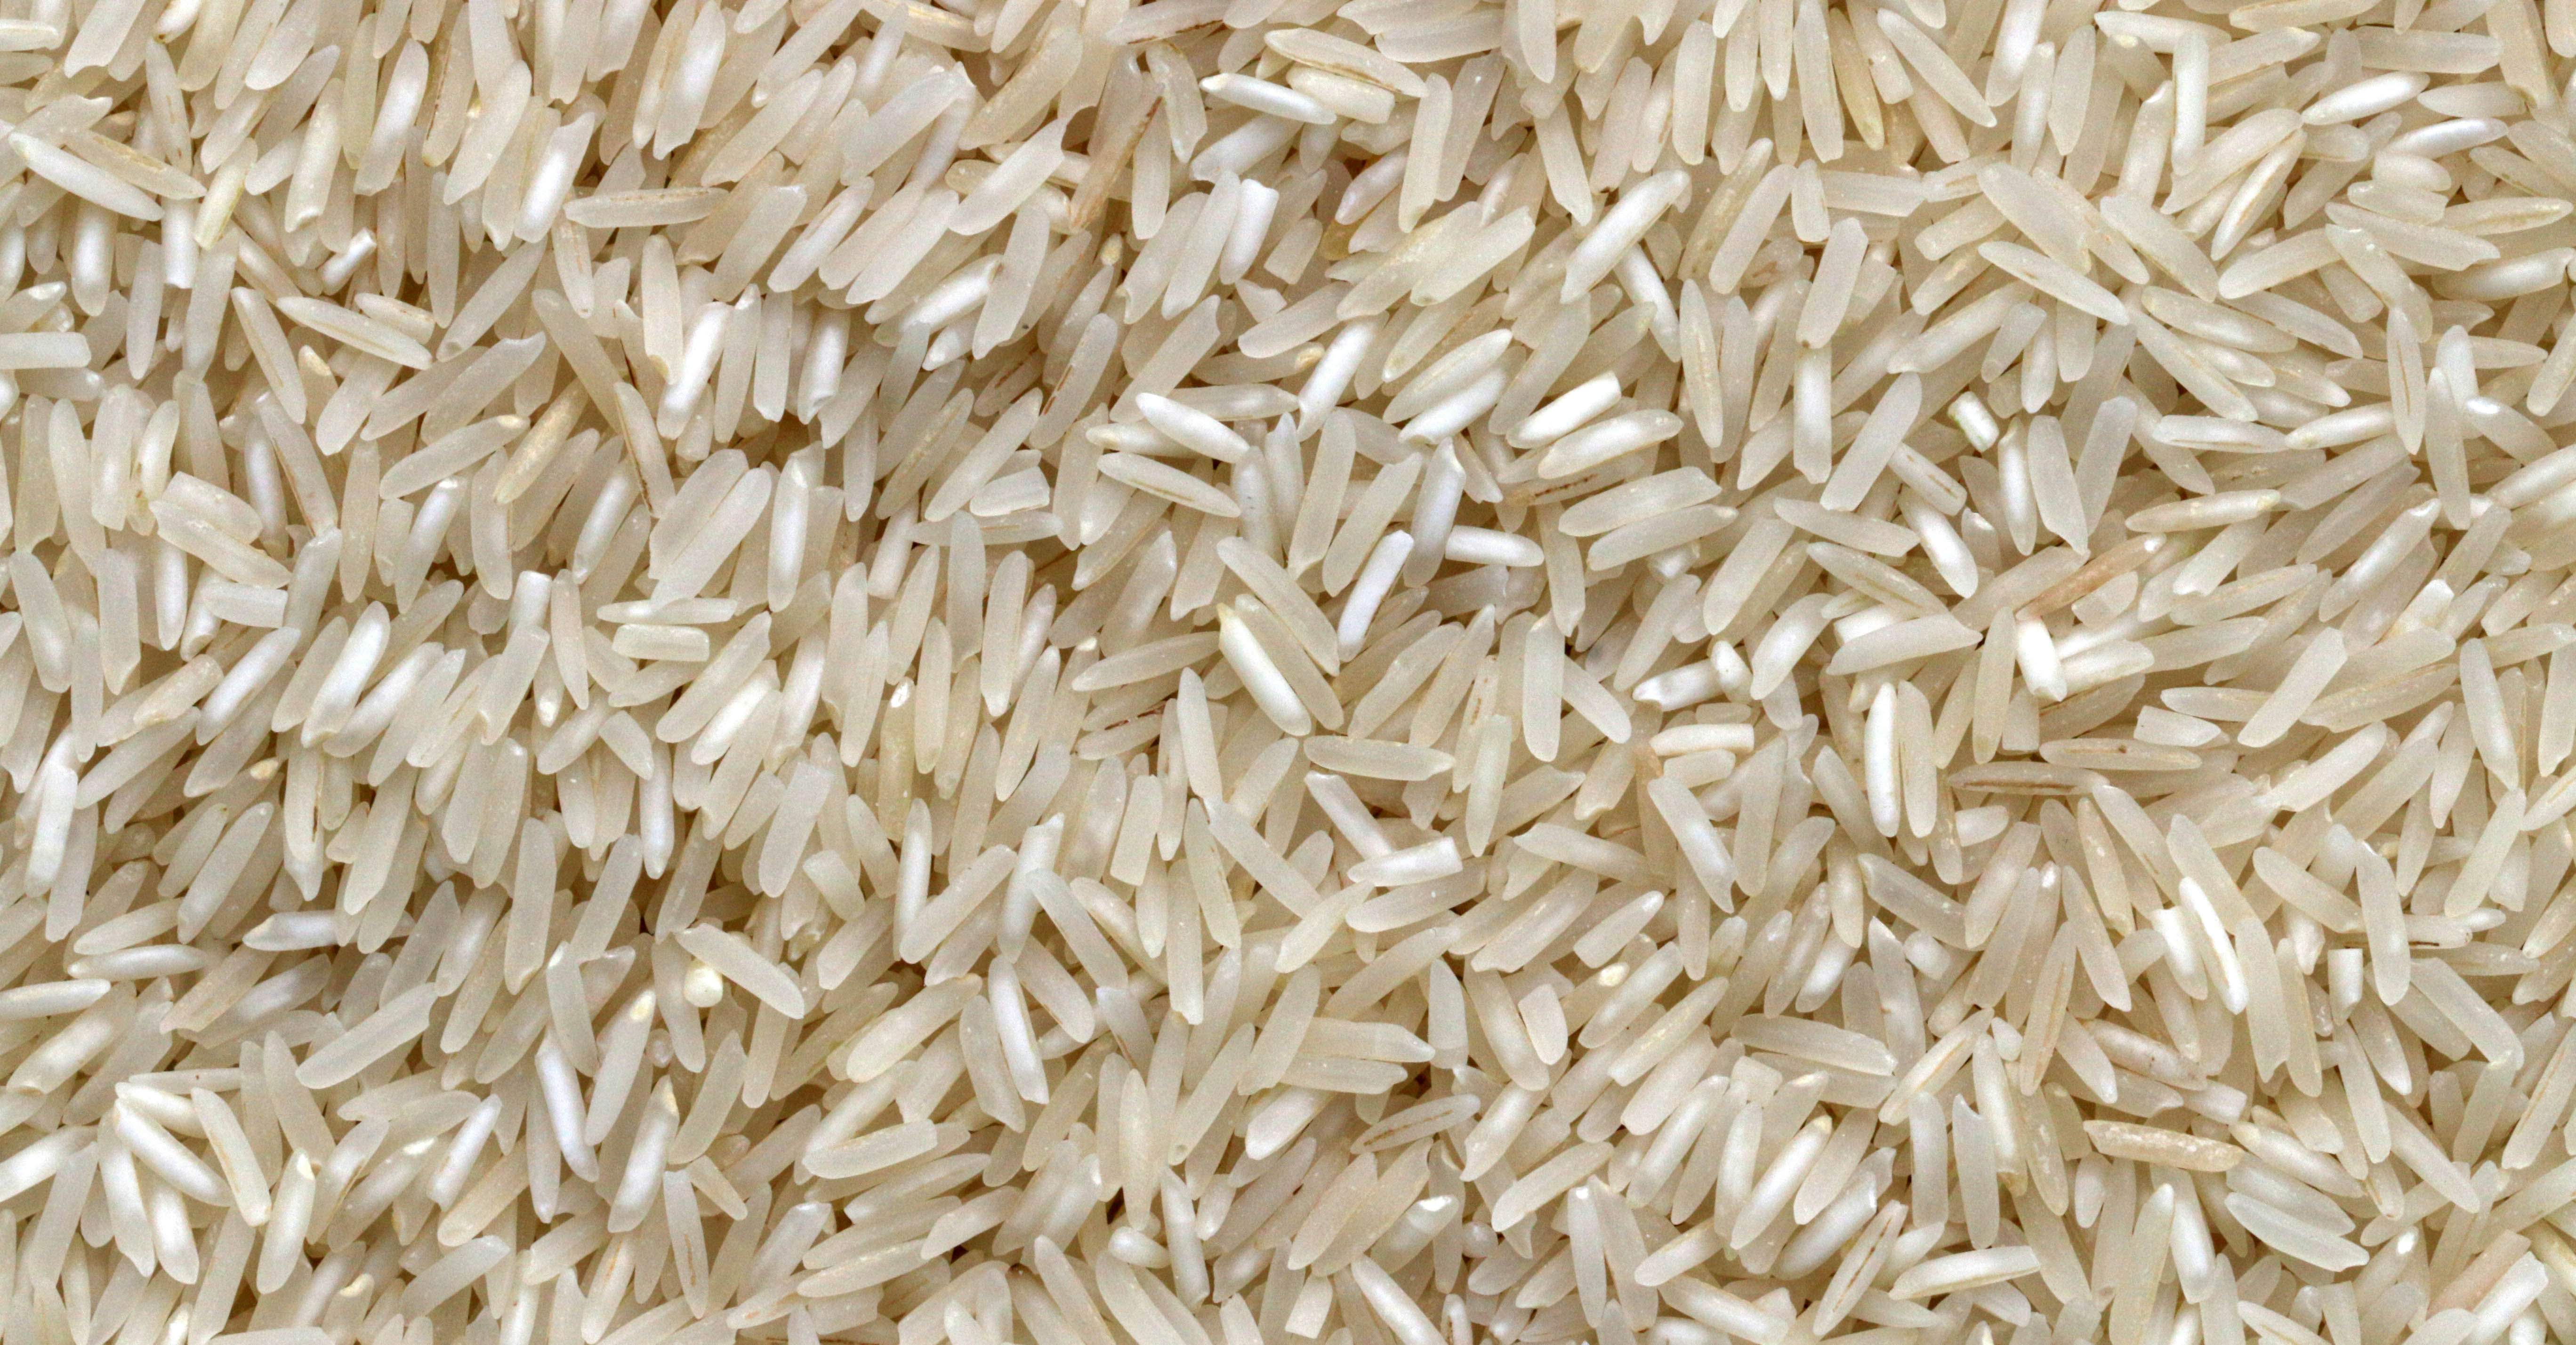 Closeup image of rice